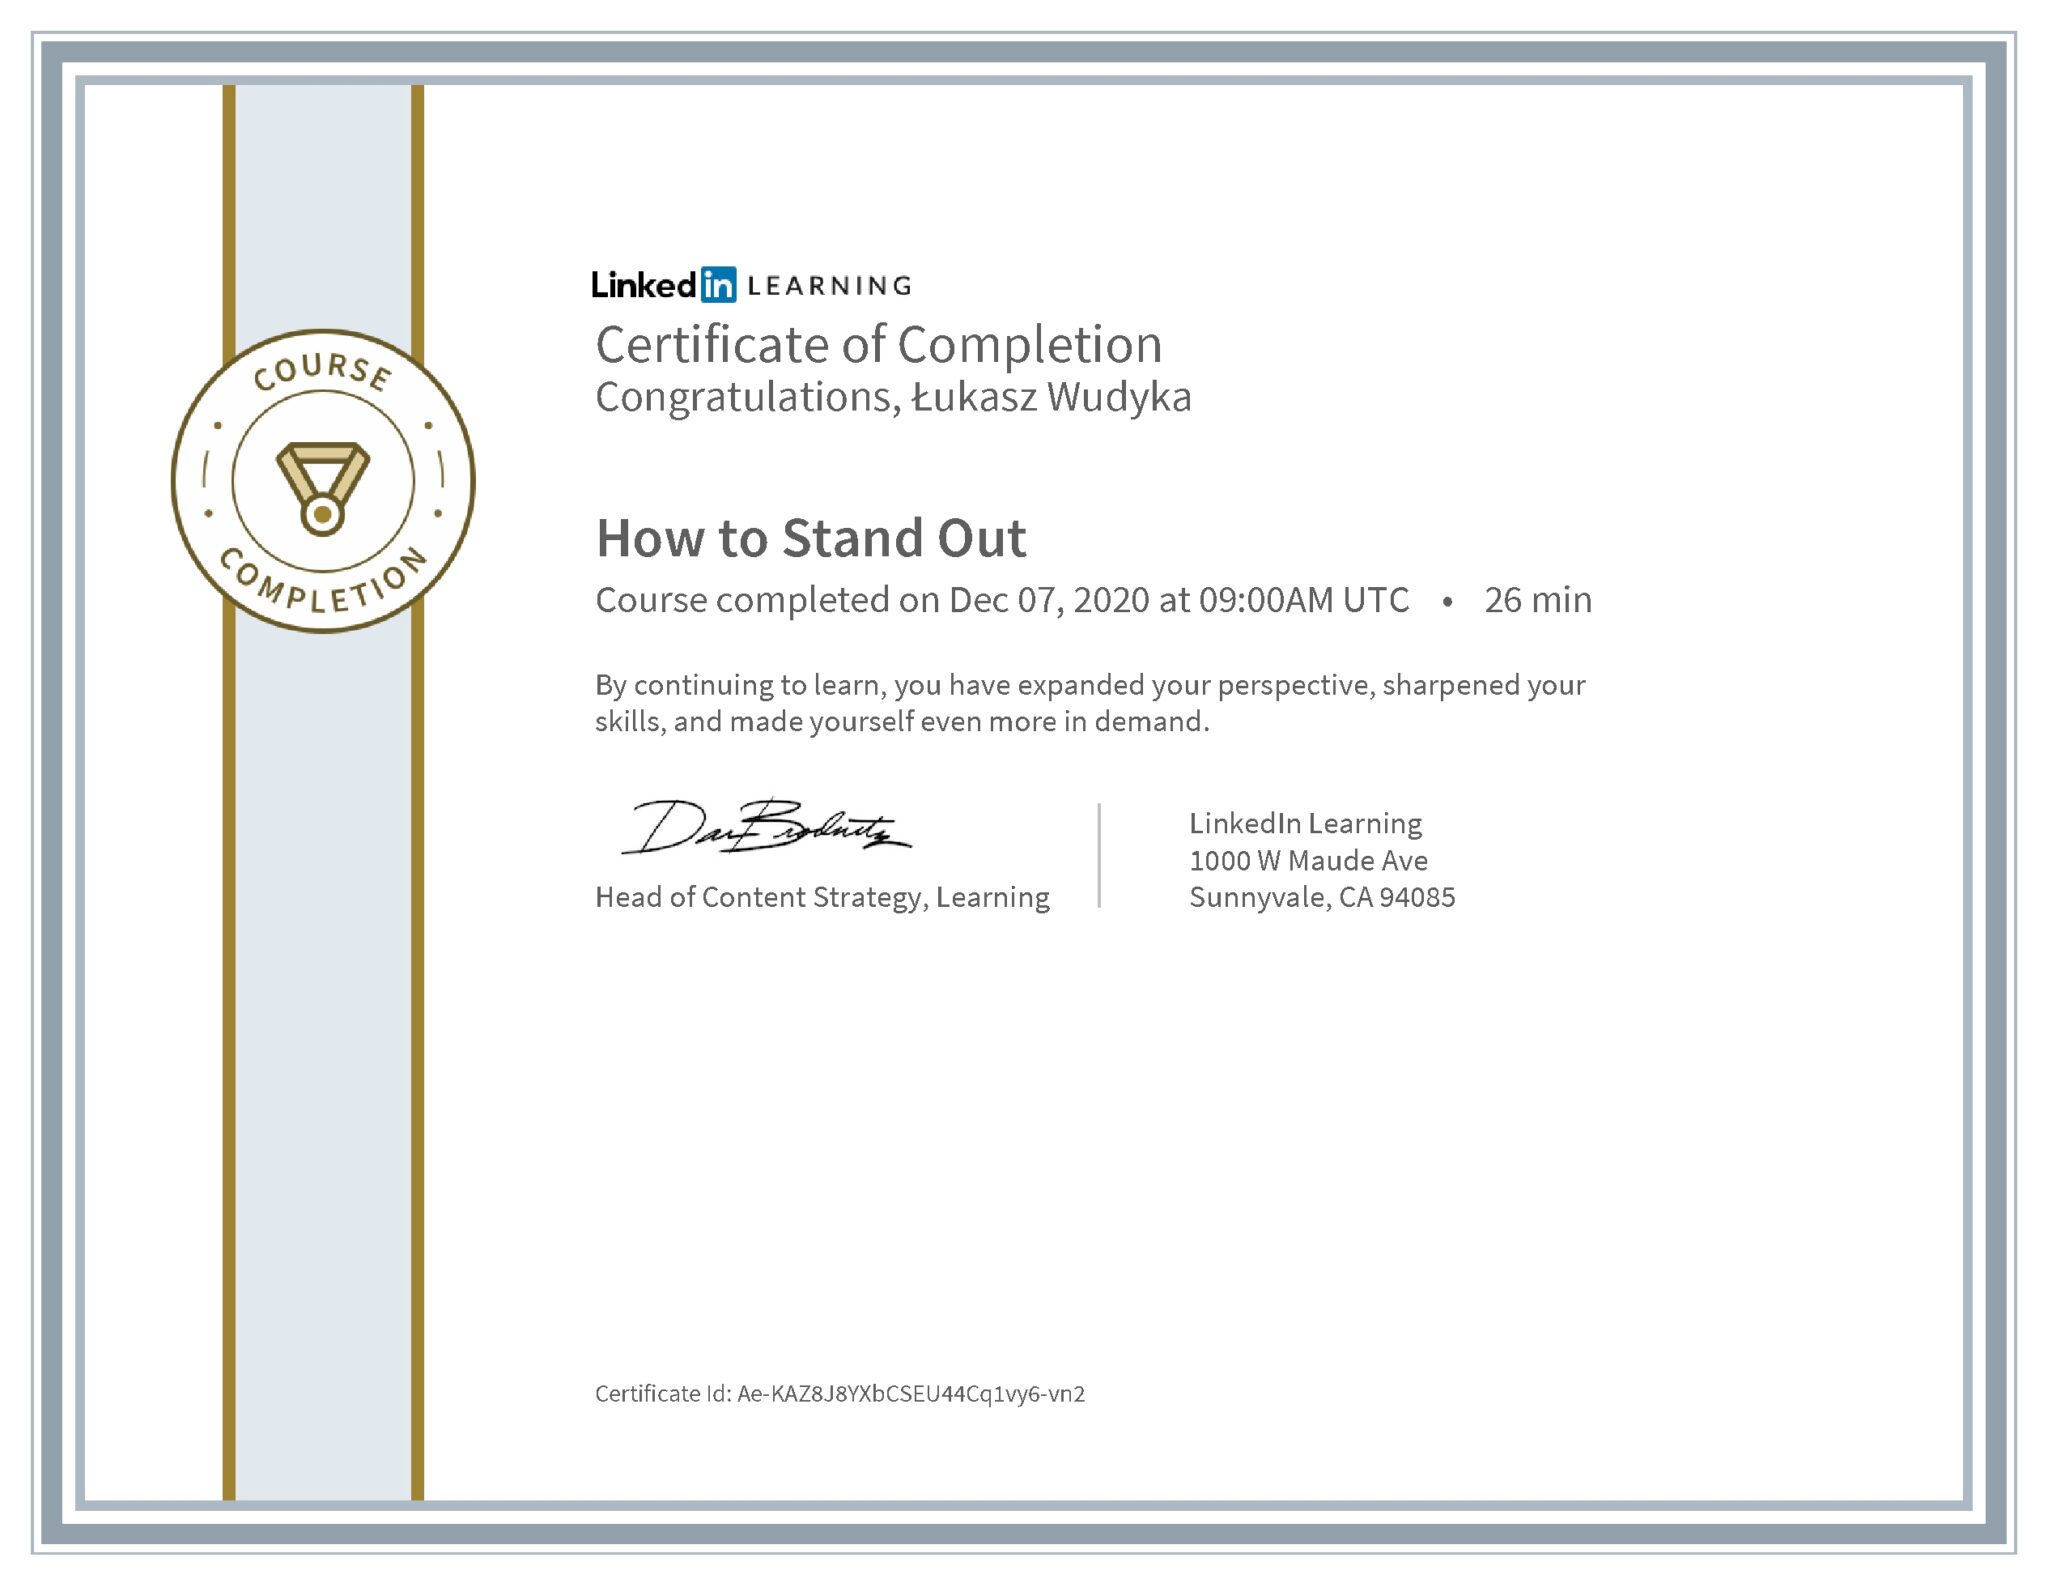 Łukasz Wudyka certyfikat LinkedIn How to Stand Out